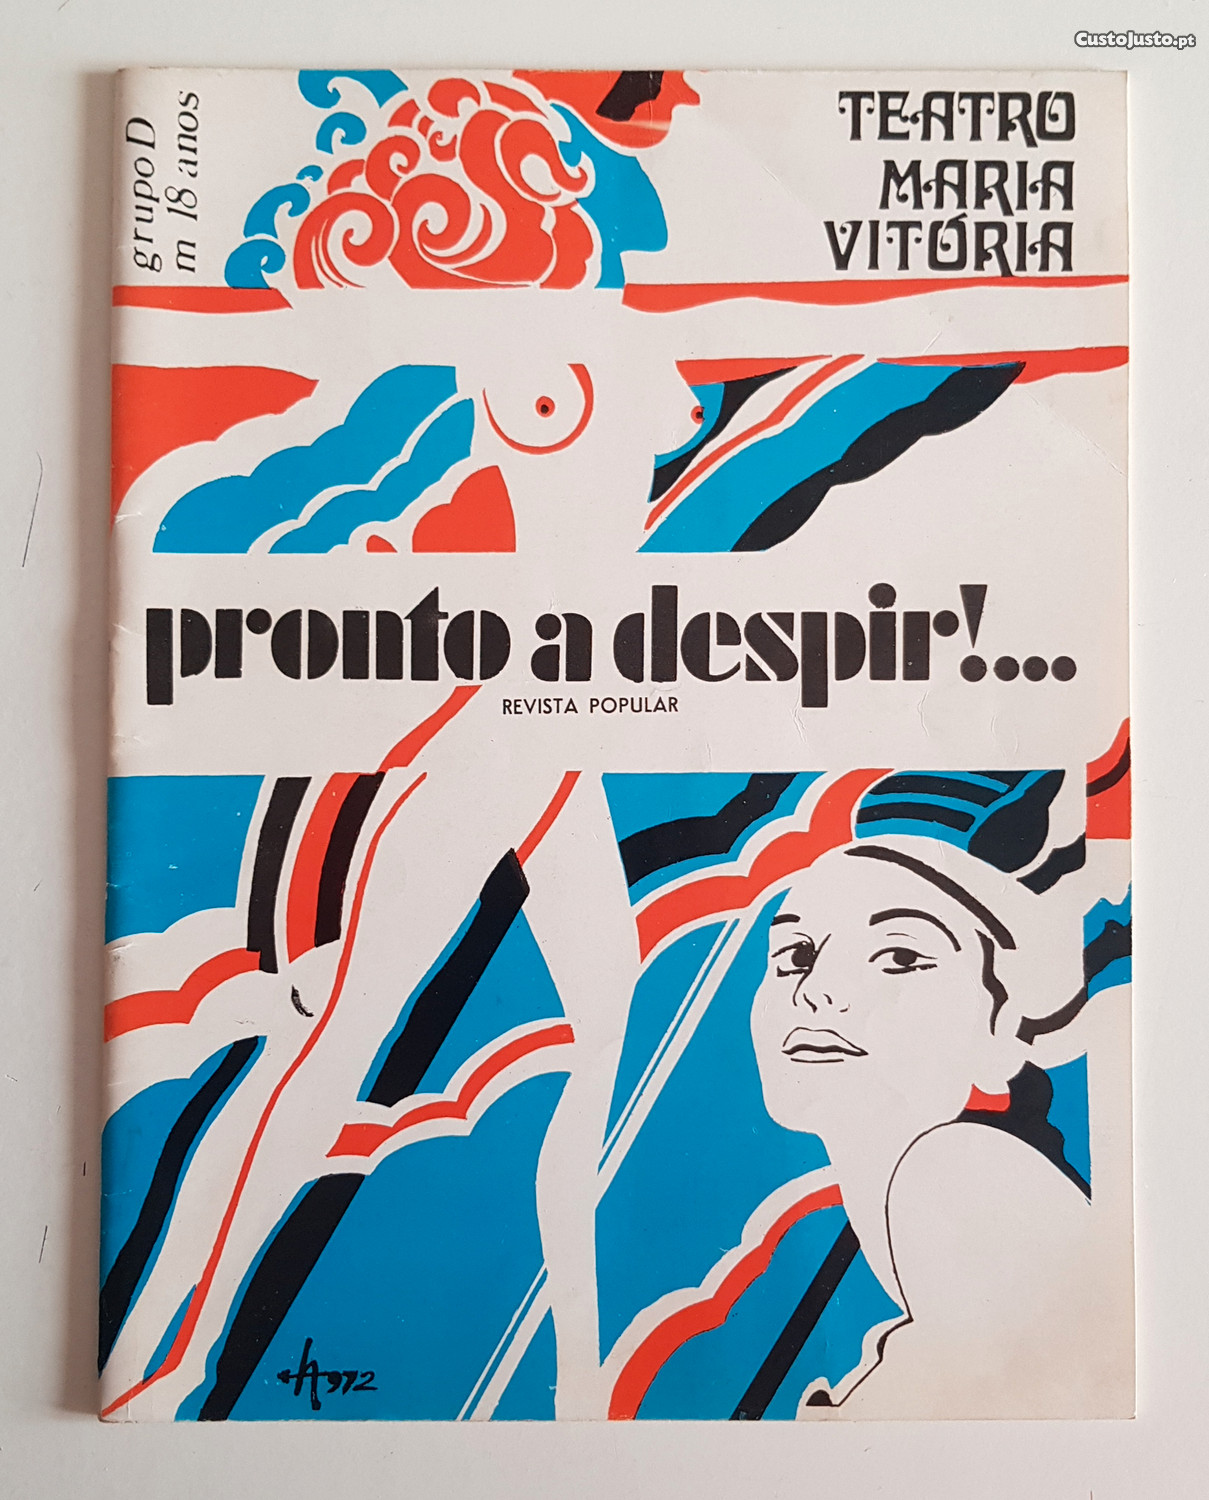 Programa TEATRO Maria Vitória Revista pronto a despir!... 1972